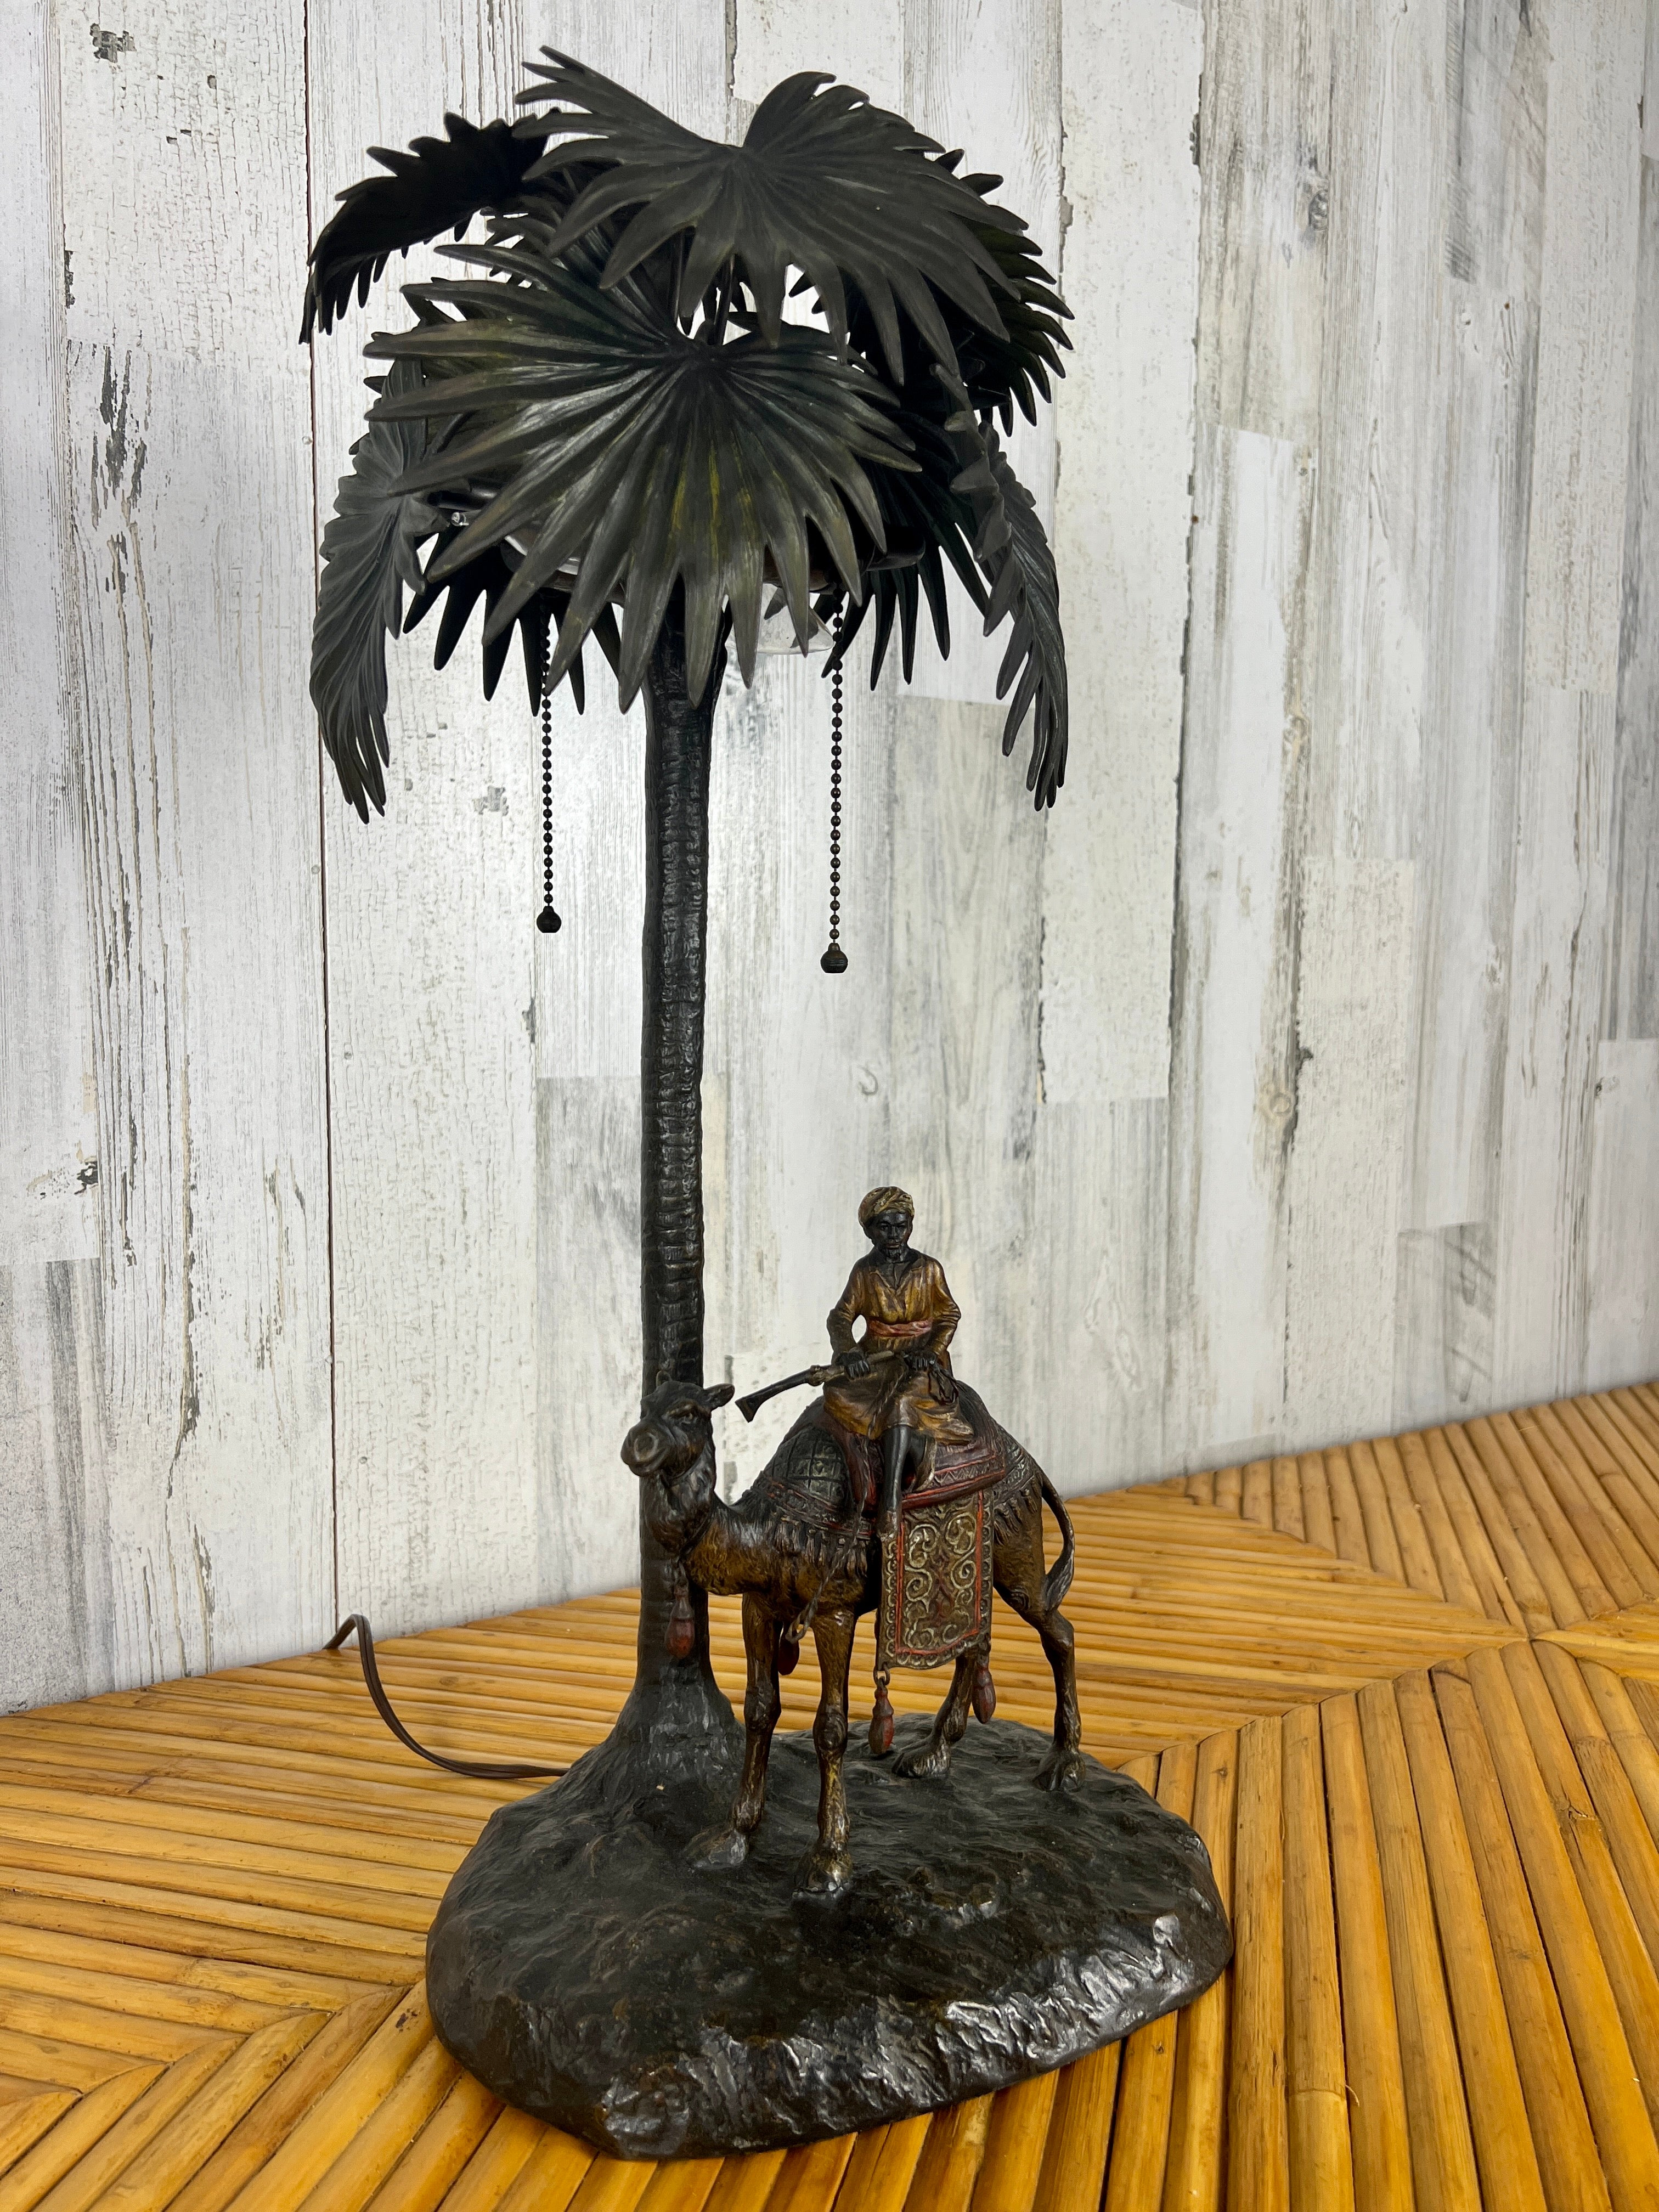 Lampe orientaliste viennoise en bronze peint à froid attribuée à Bergman représentant un homme du Moyen-Orient chevauchant un chameau. 
Signé Autriche.